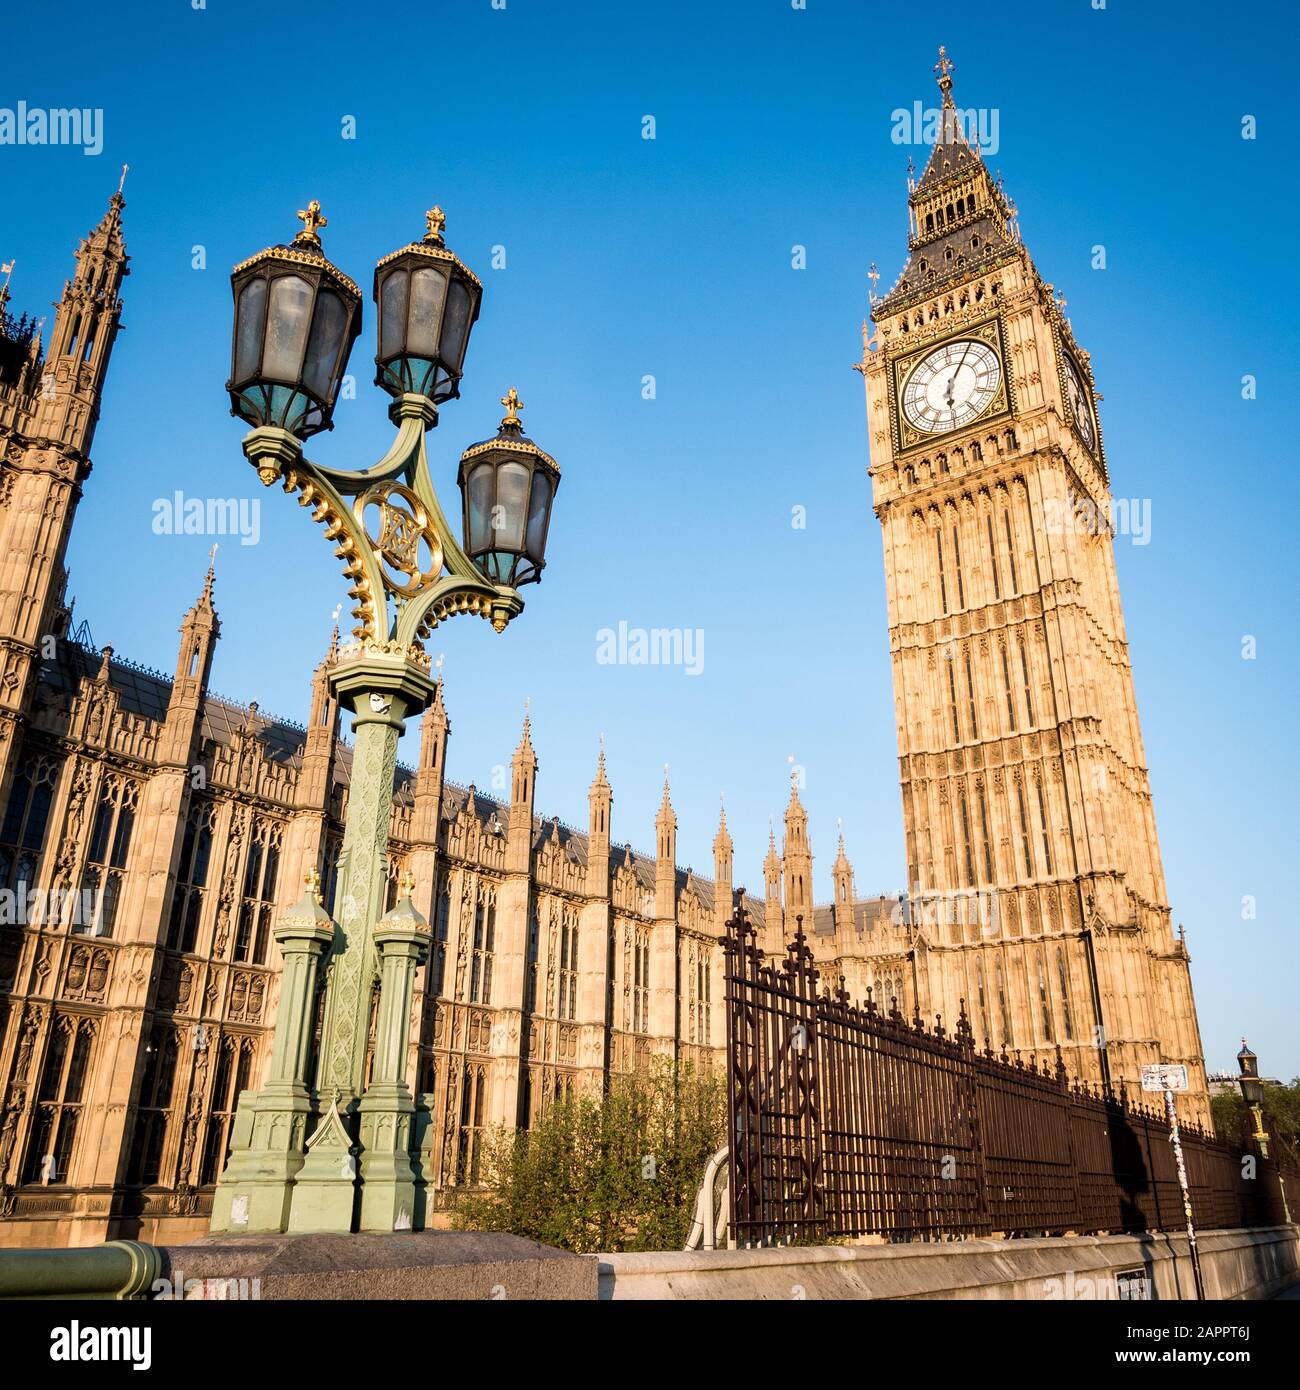 El Big Ben y el Palacio de Westminster. Vista en ángulo bajo del famoso punto de referencia de la torre del reloj de Londres a primera hora de la mañana. Foto de stock